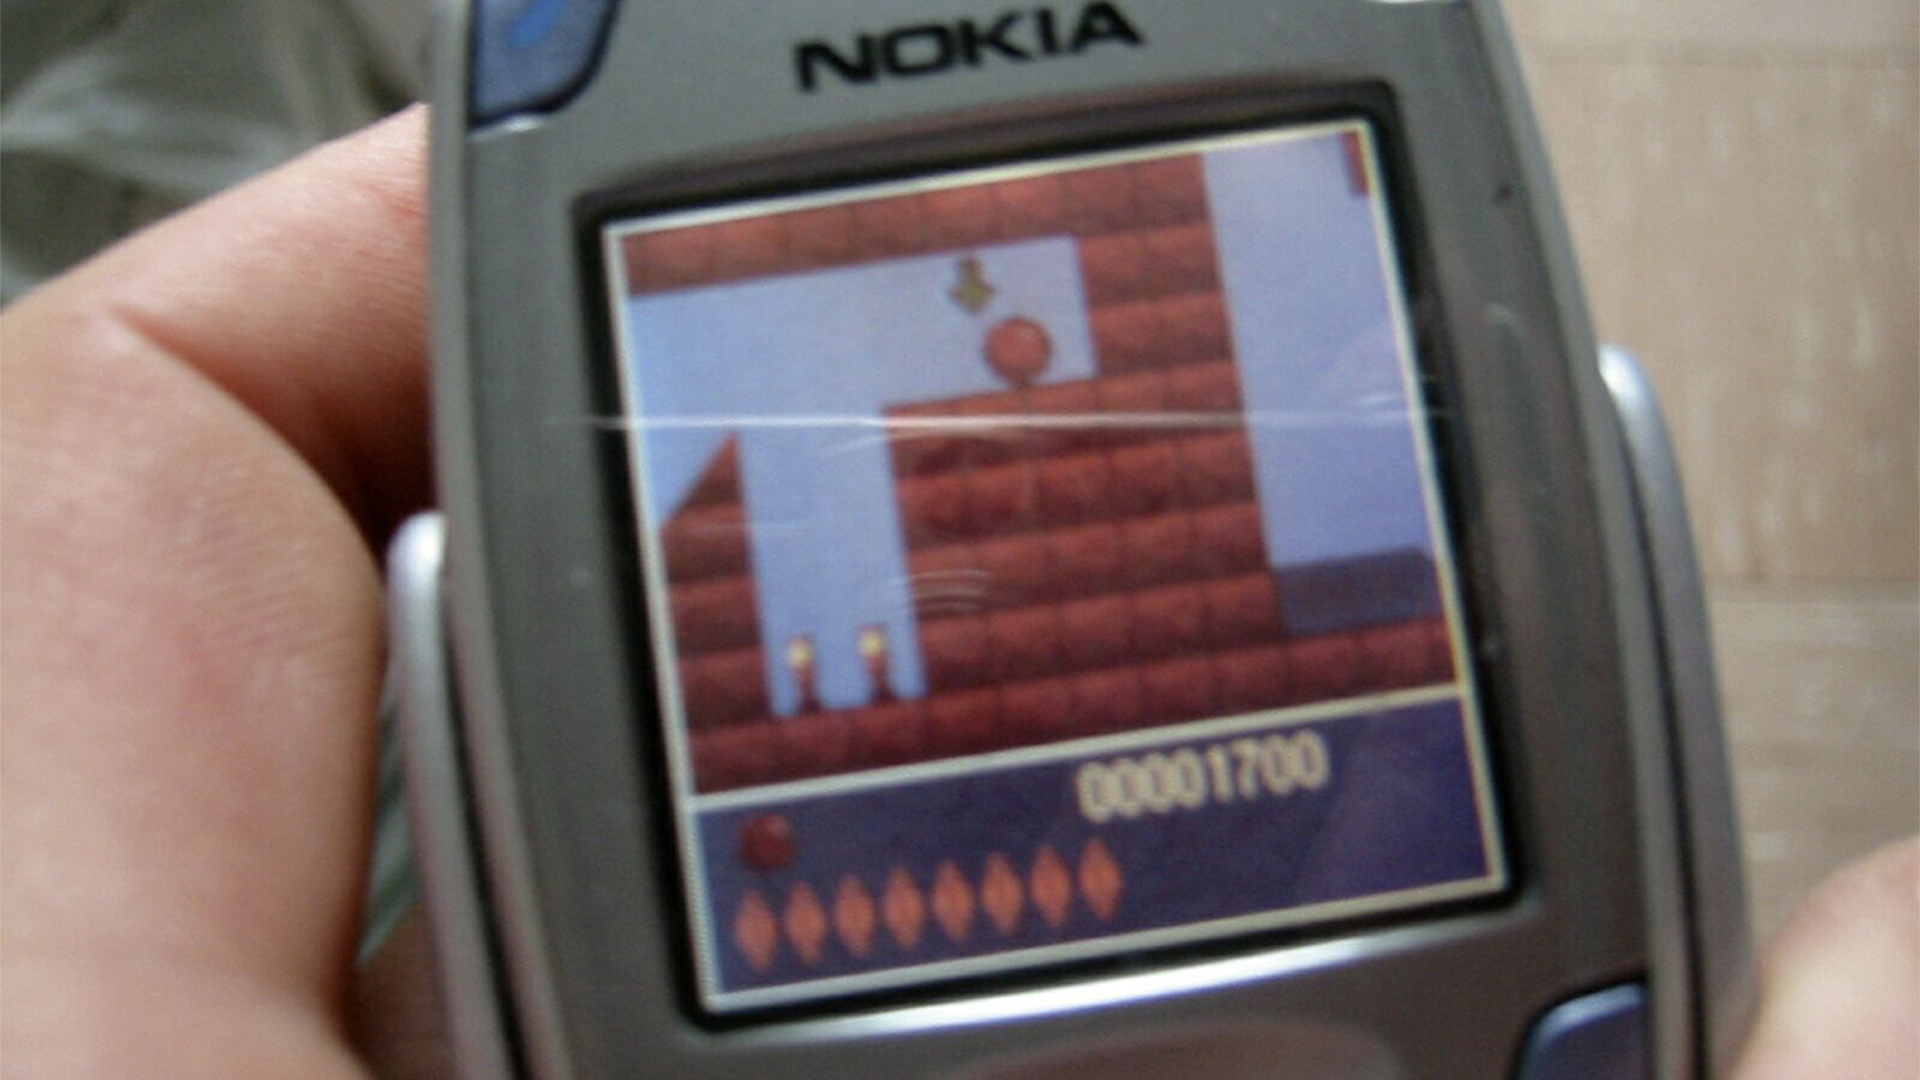 Retro game on a Nokia phone